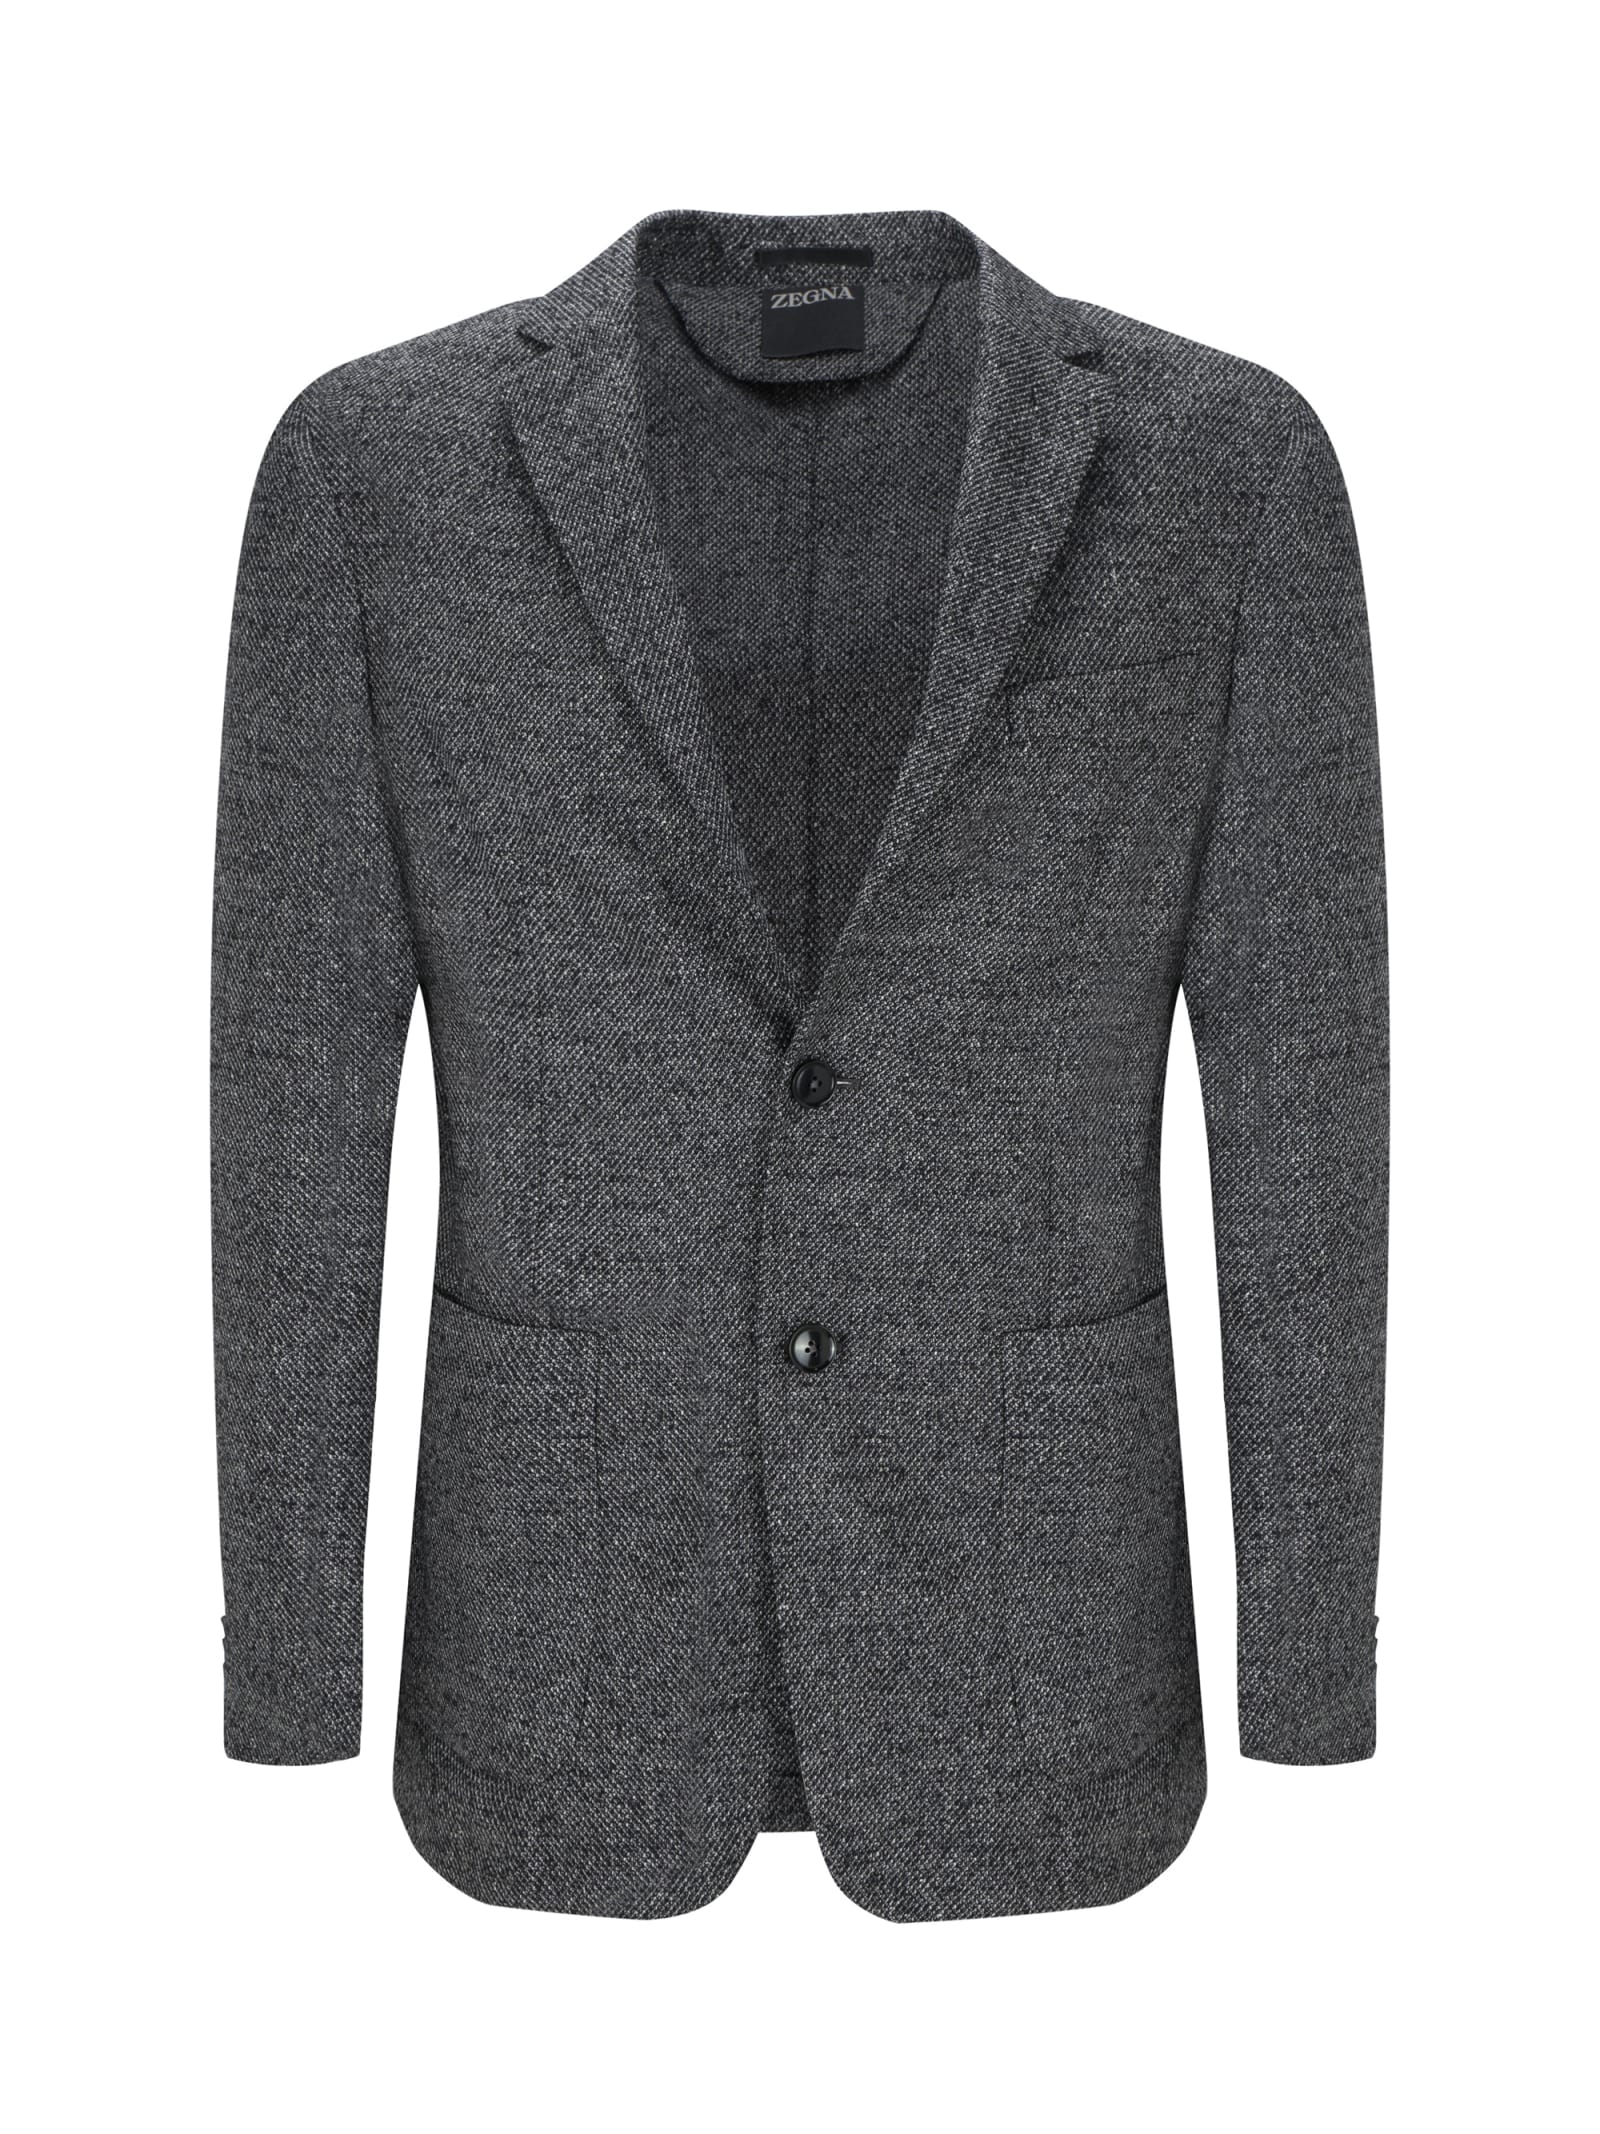 Zegna Blazer Jacket In Gray